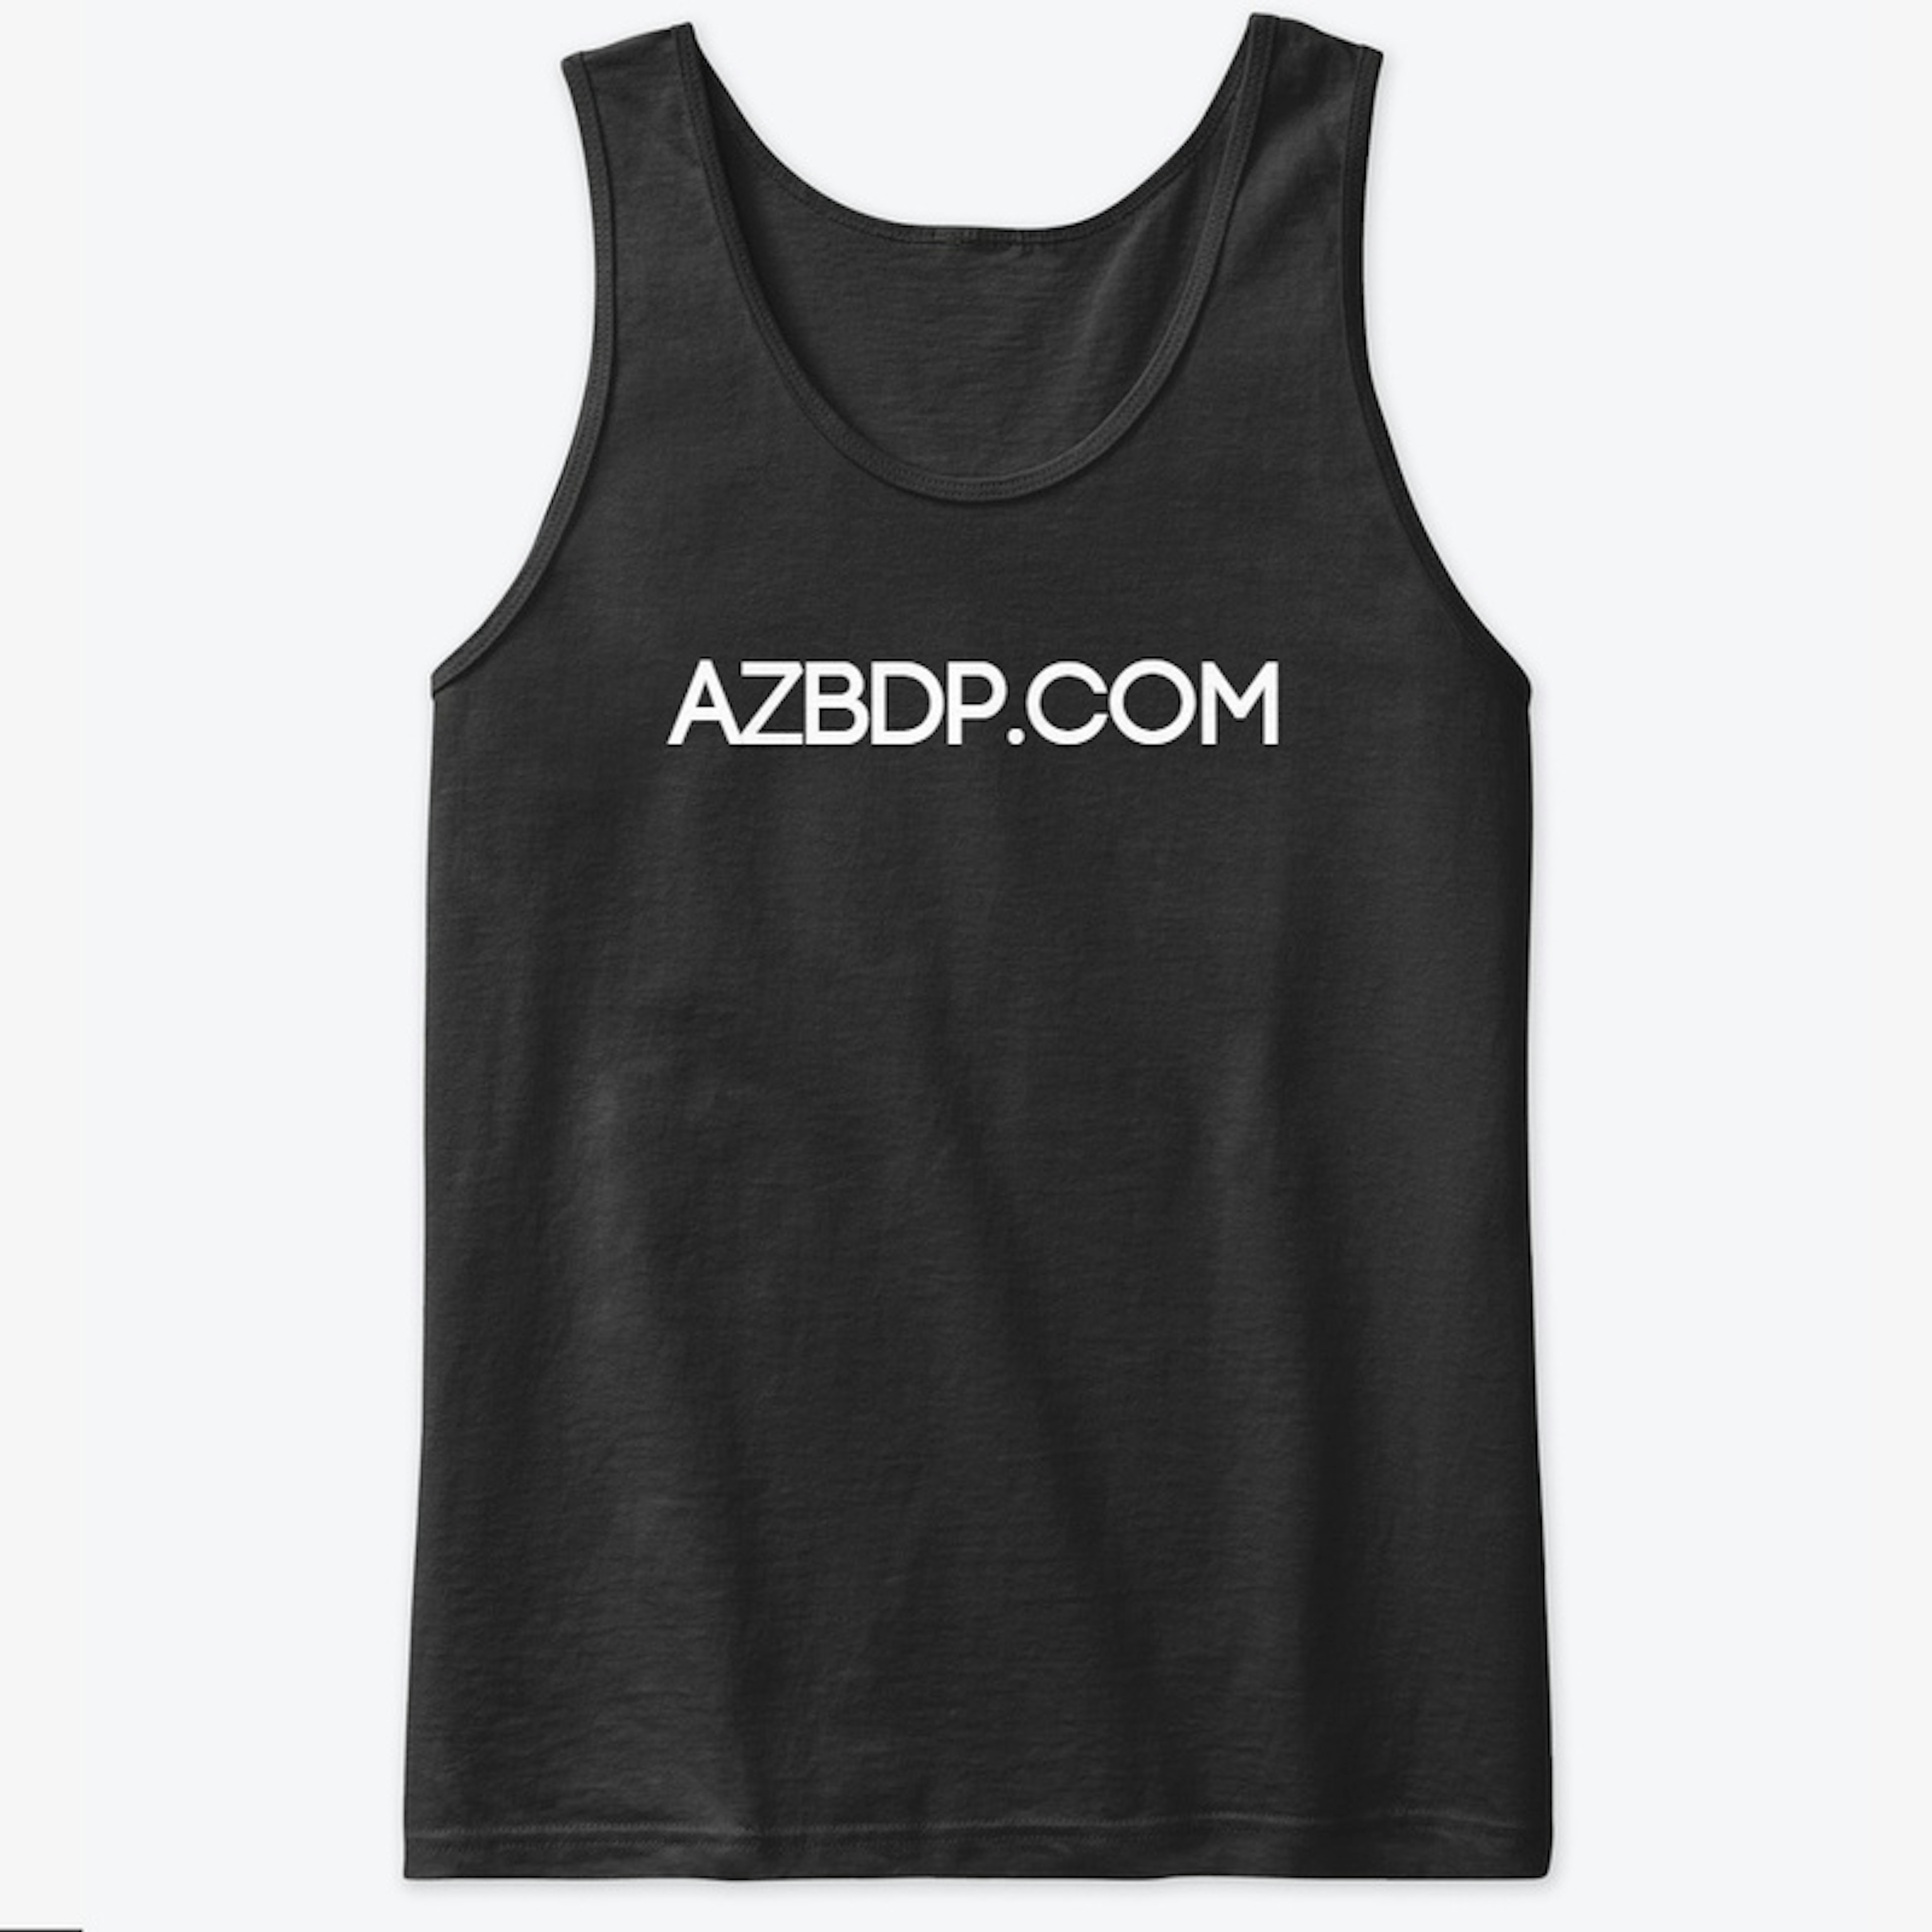 AZBDP.COM